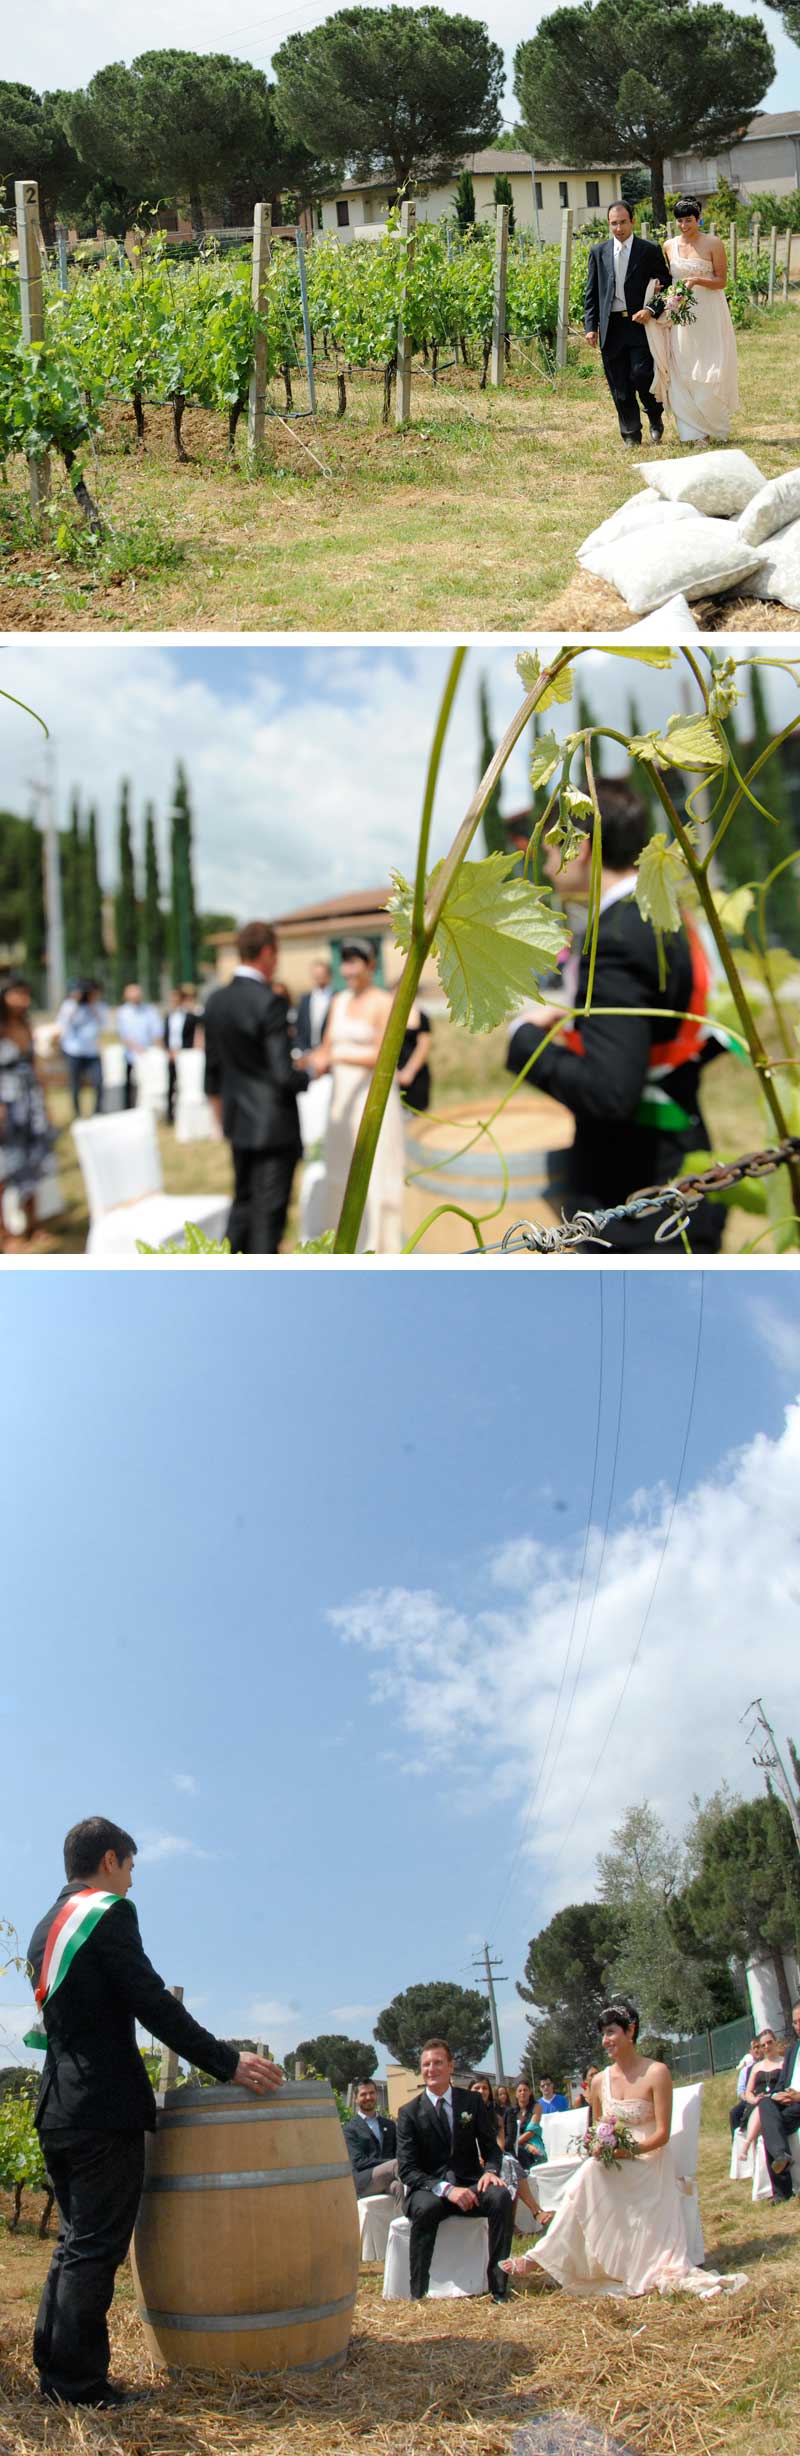 Matrimonio Country Tema Vino: Celebrazione nella vigna da parte del sindaco di Torgiano